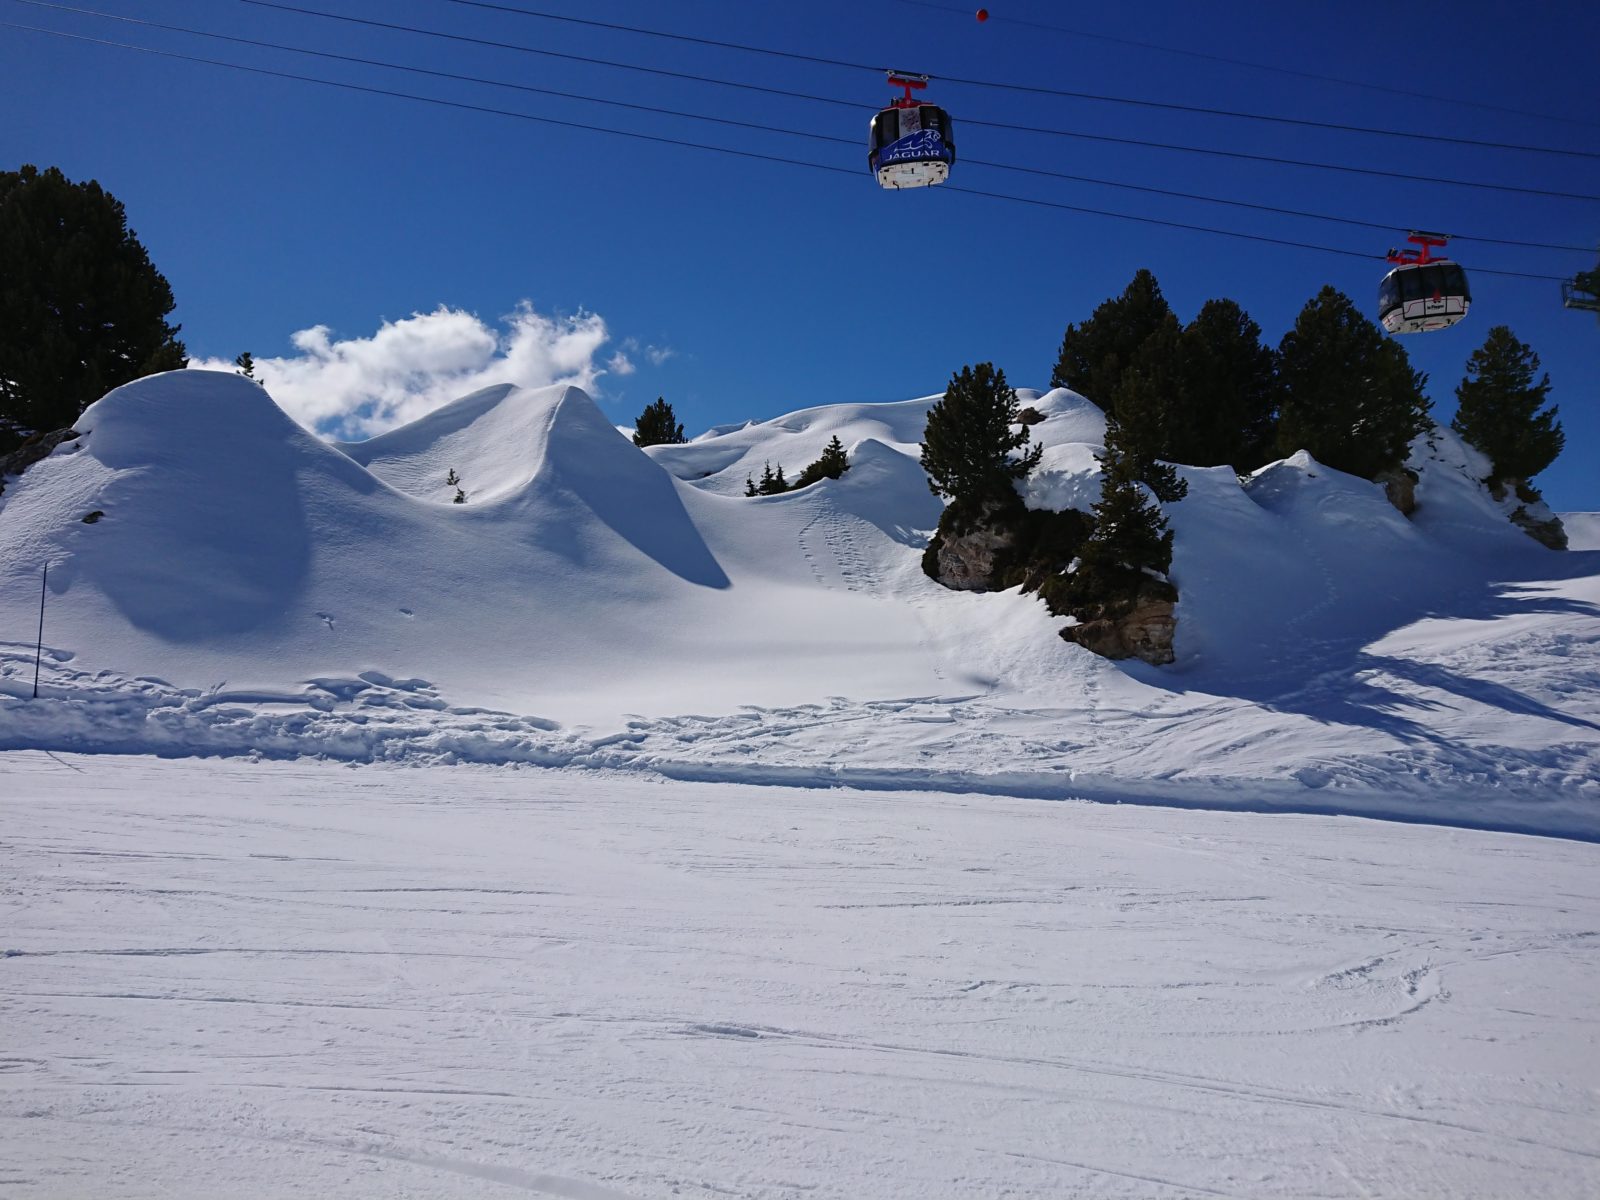 Snowboarding in La Plagne with Will I Ski